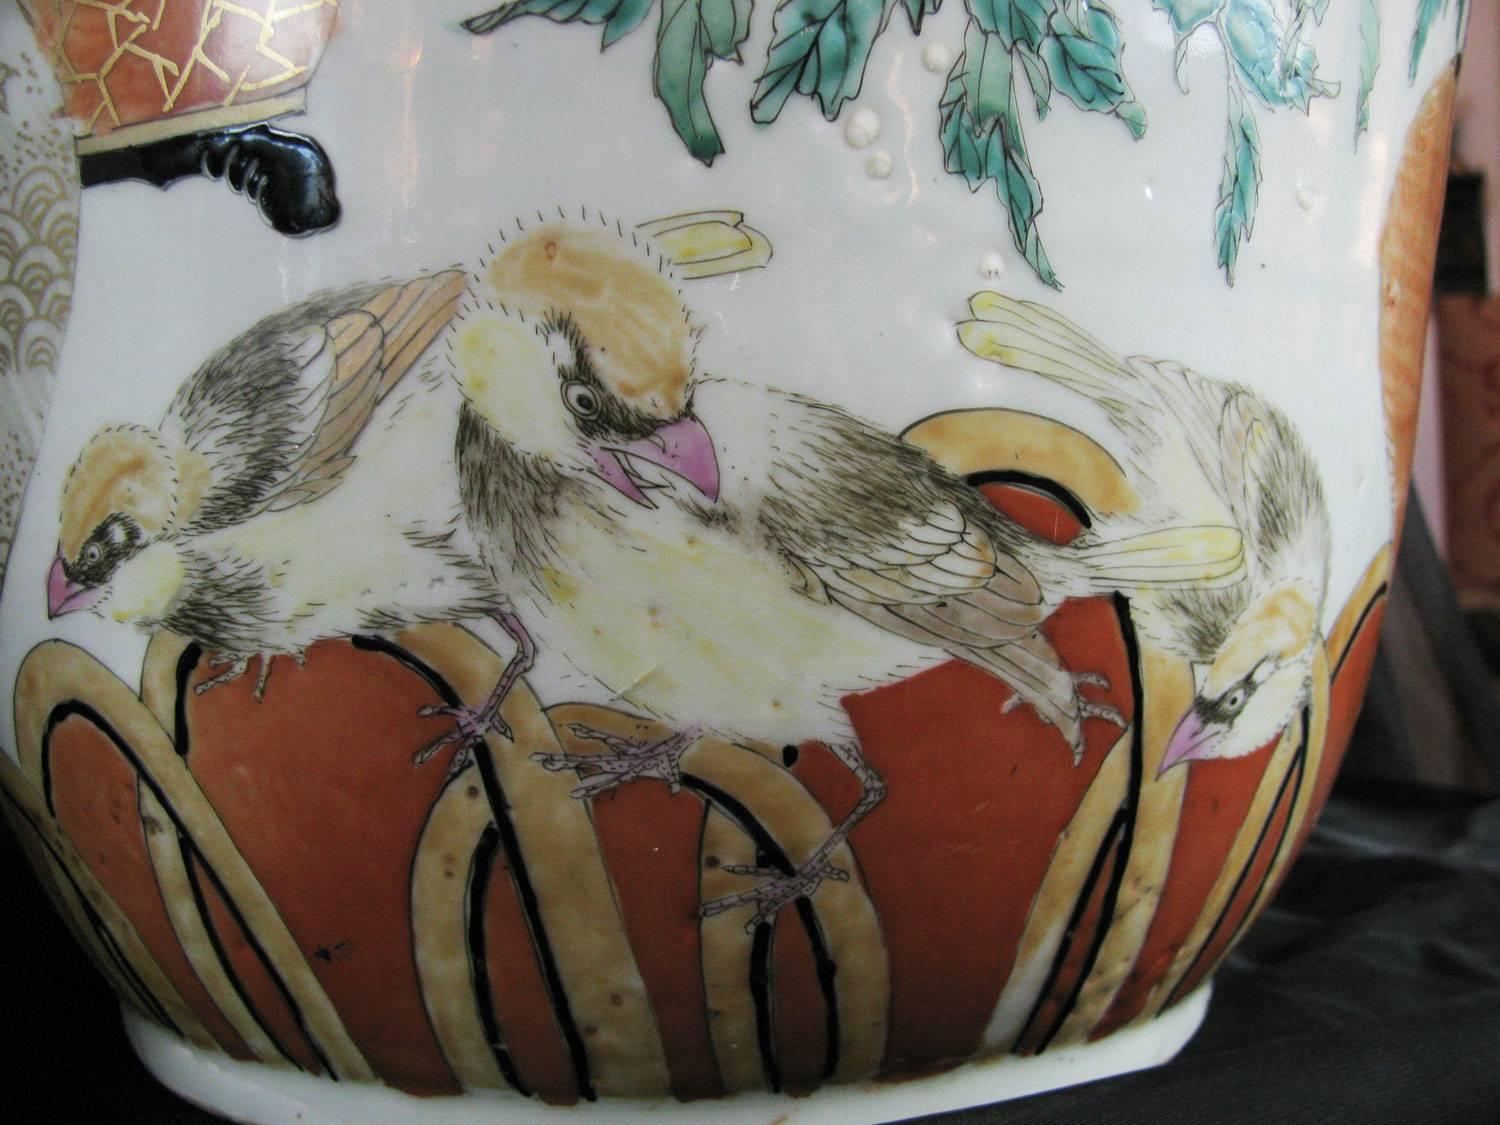 Pair of Large Japanese Porcelain Vases 19th Century Kutani Style (Porzellan)